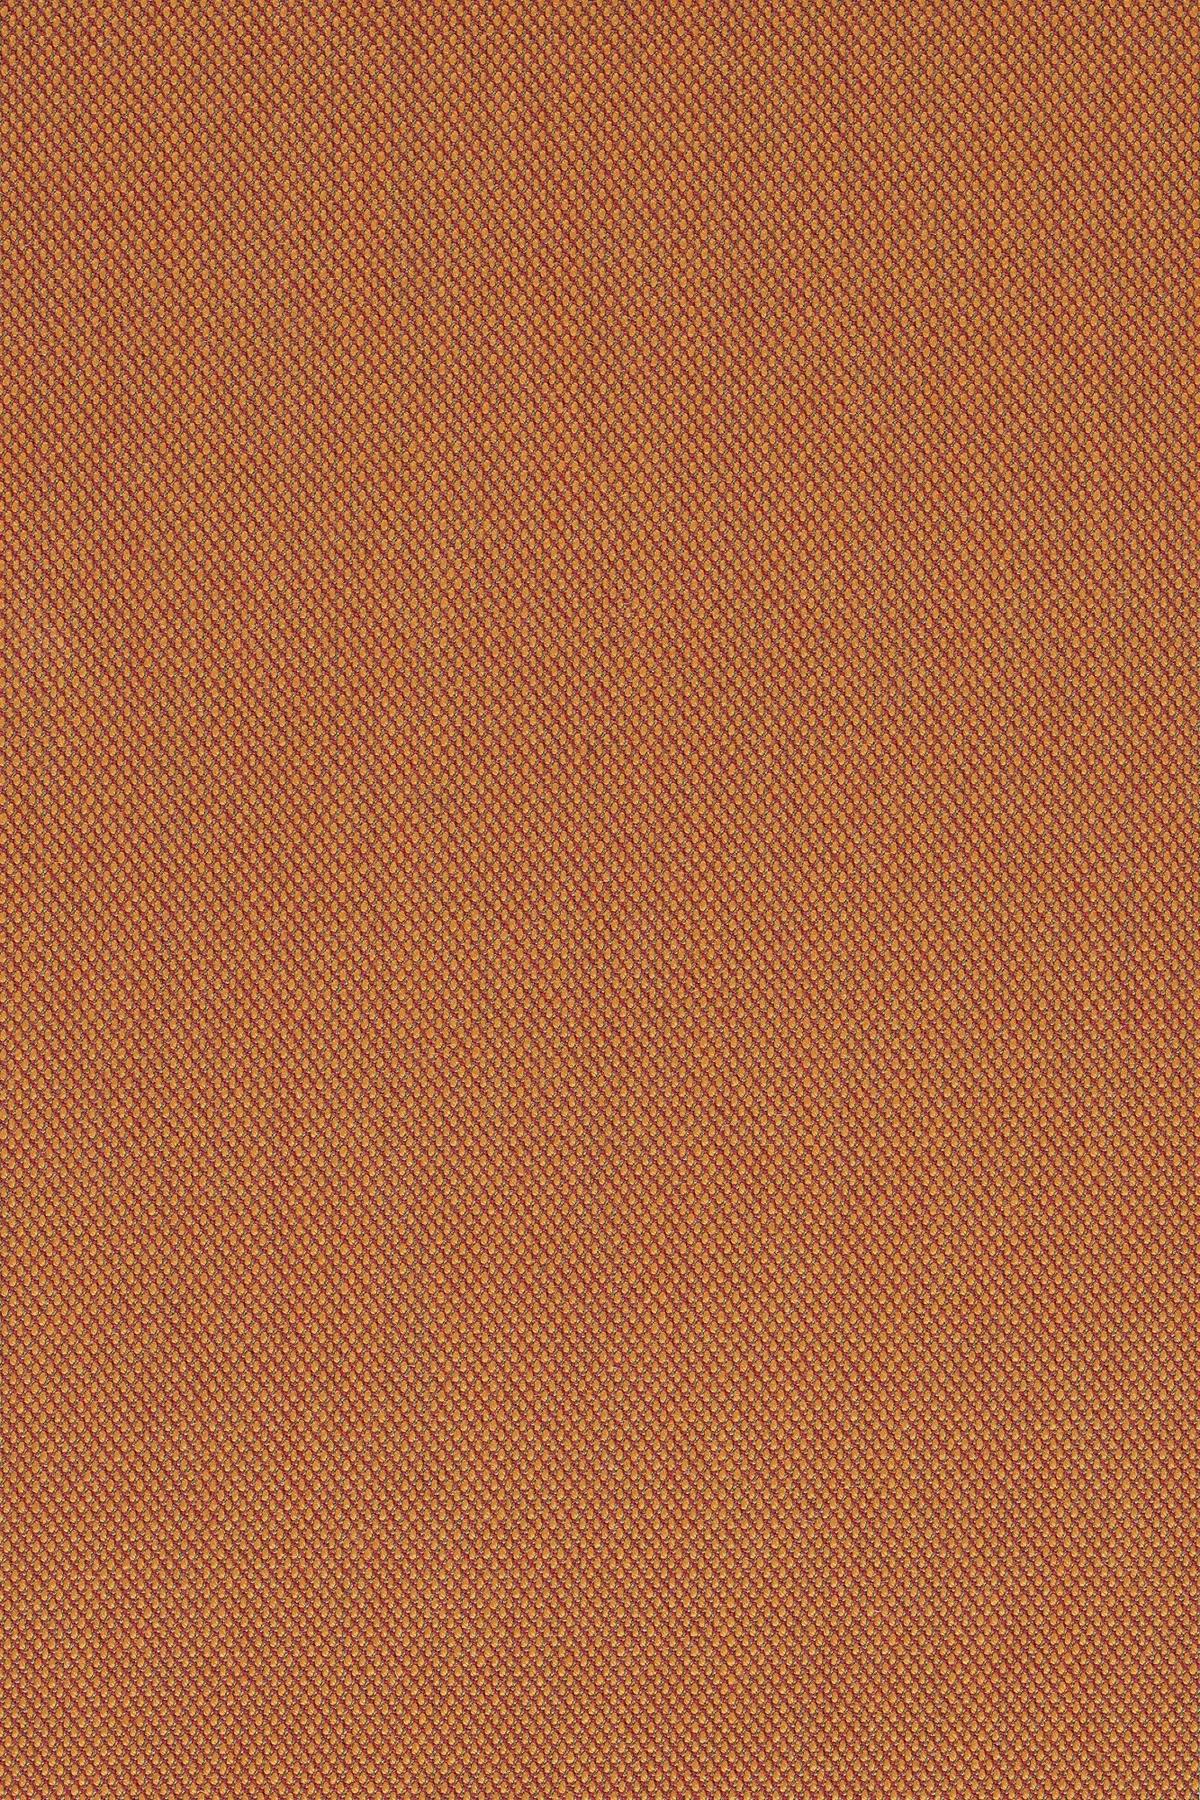 Fabric sample Steelcut Trio 3 576 orange